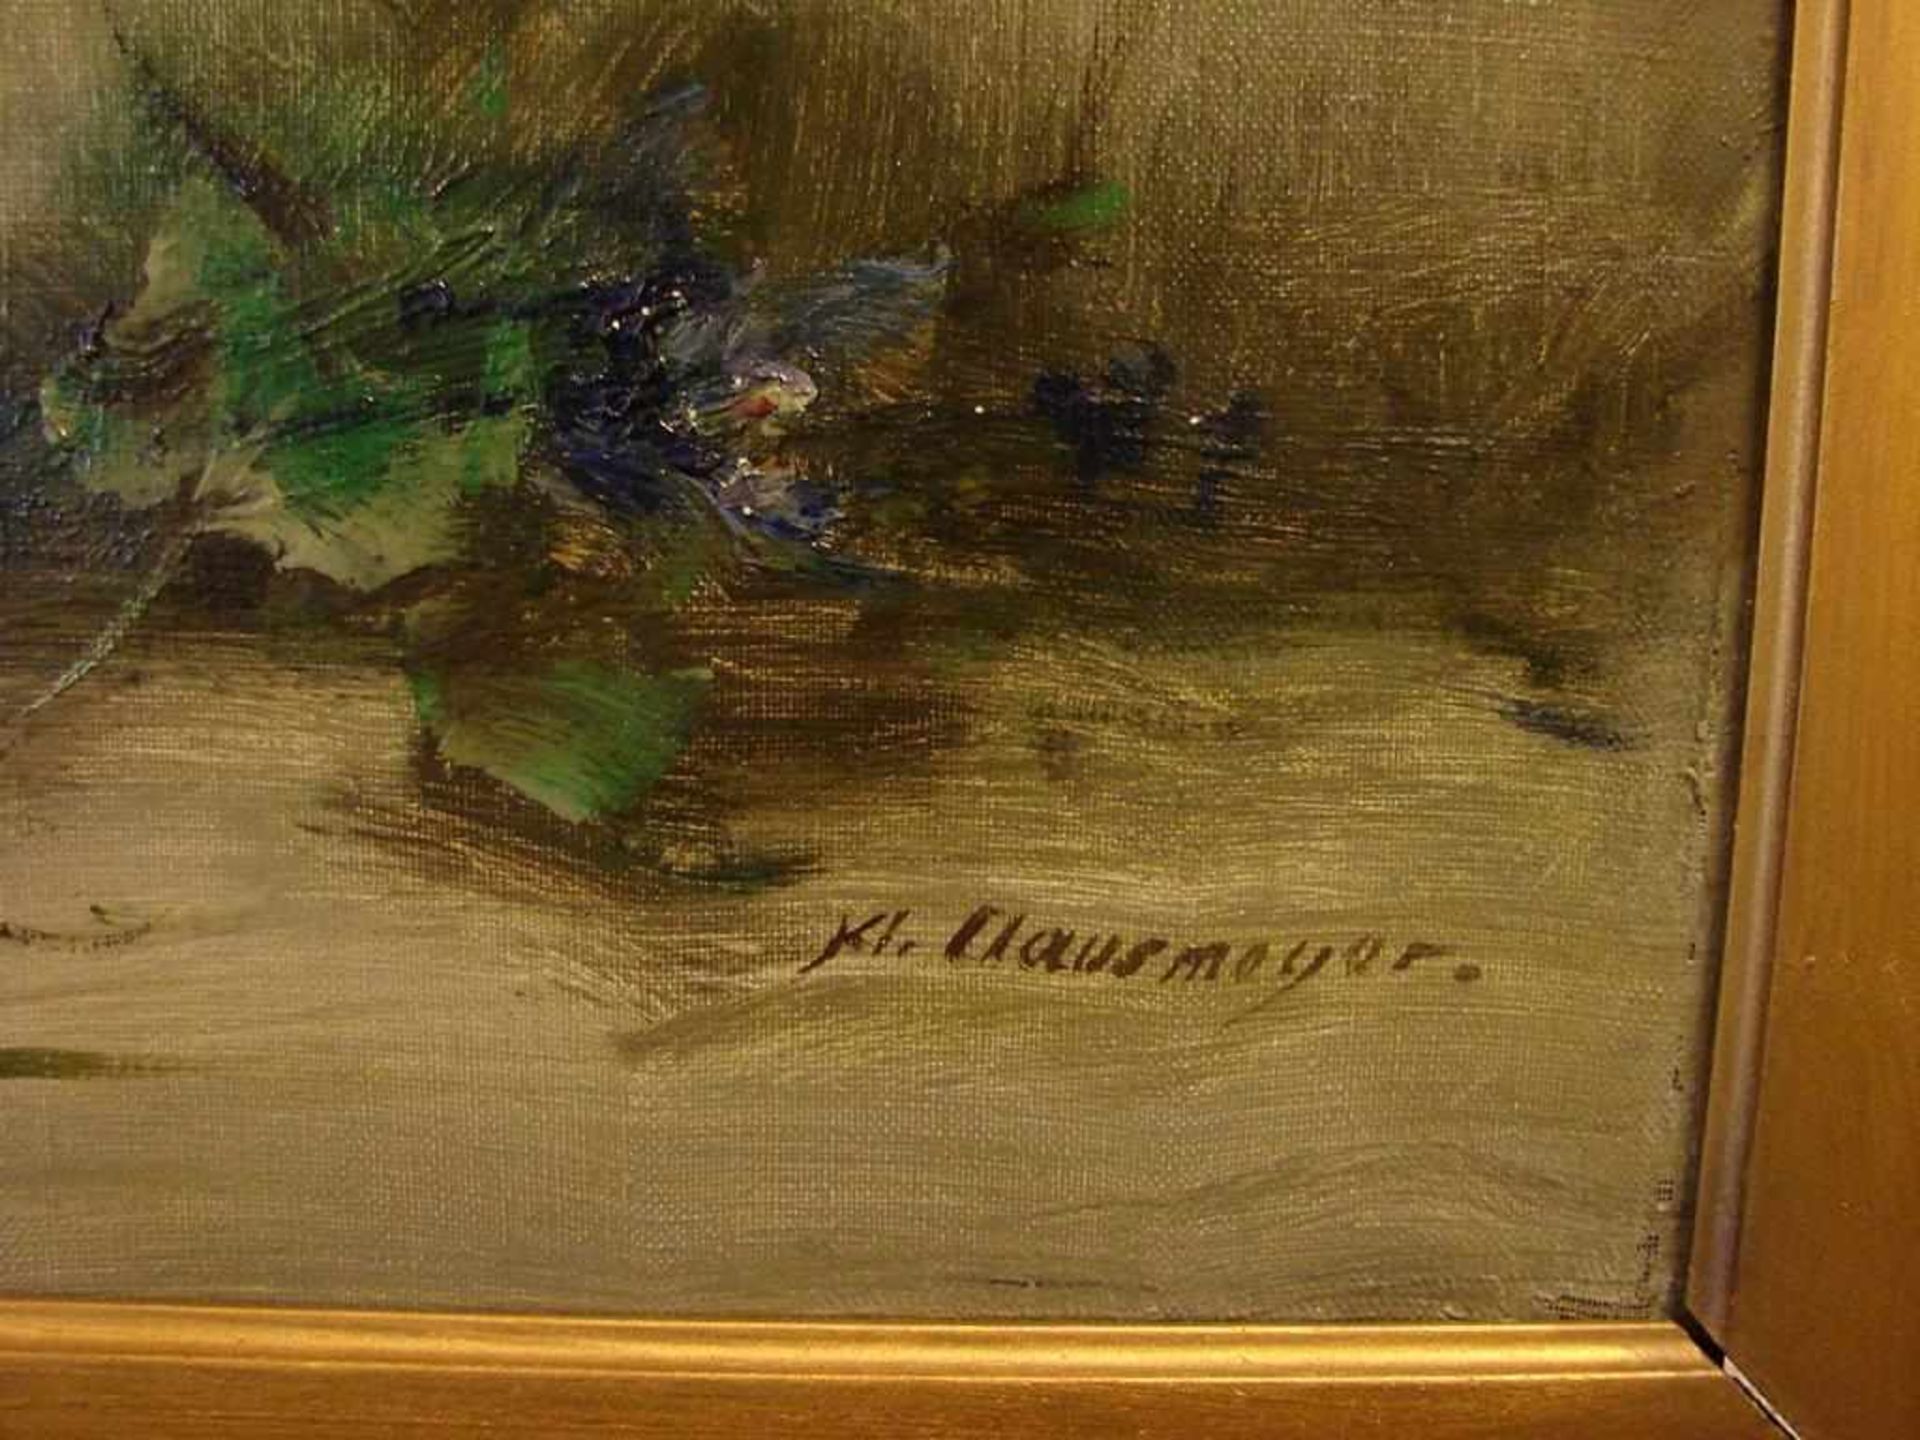 KL. HAUSMEYER, "Blumenstilleben", Öl/L, u.re.sig., ca. 79 x 58 cm< - Image 2 of 2